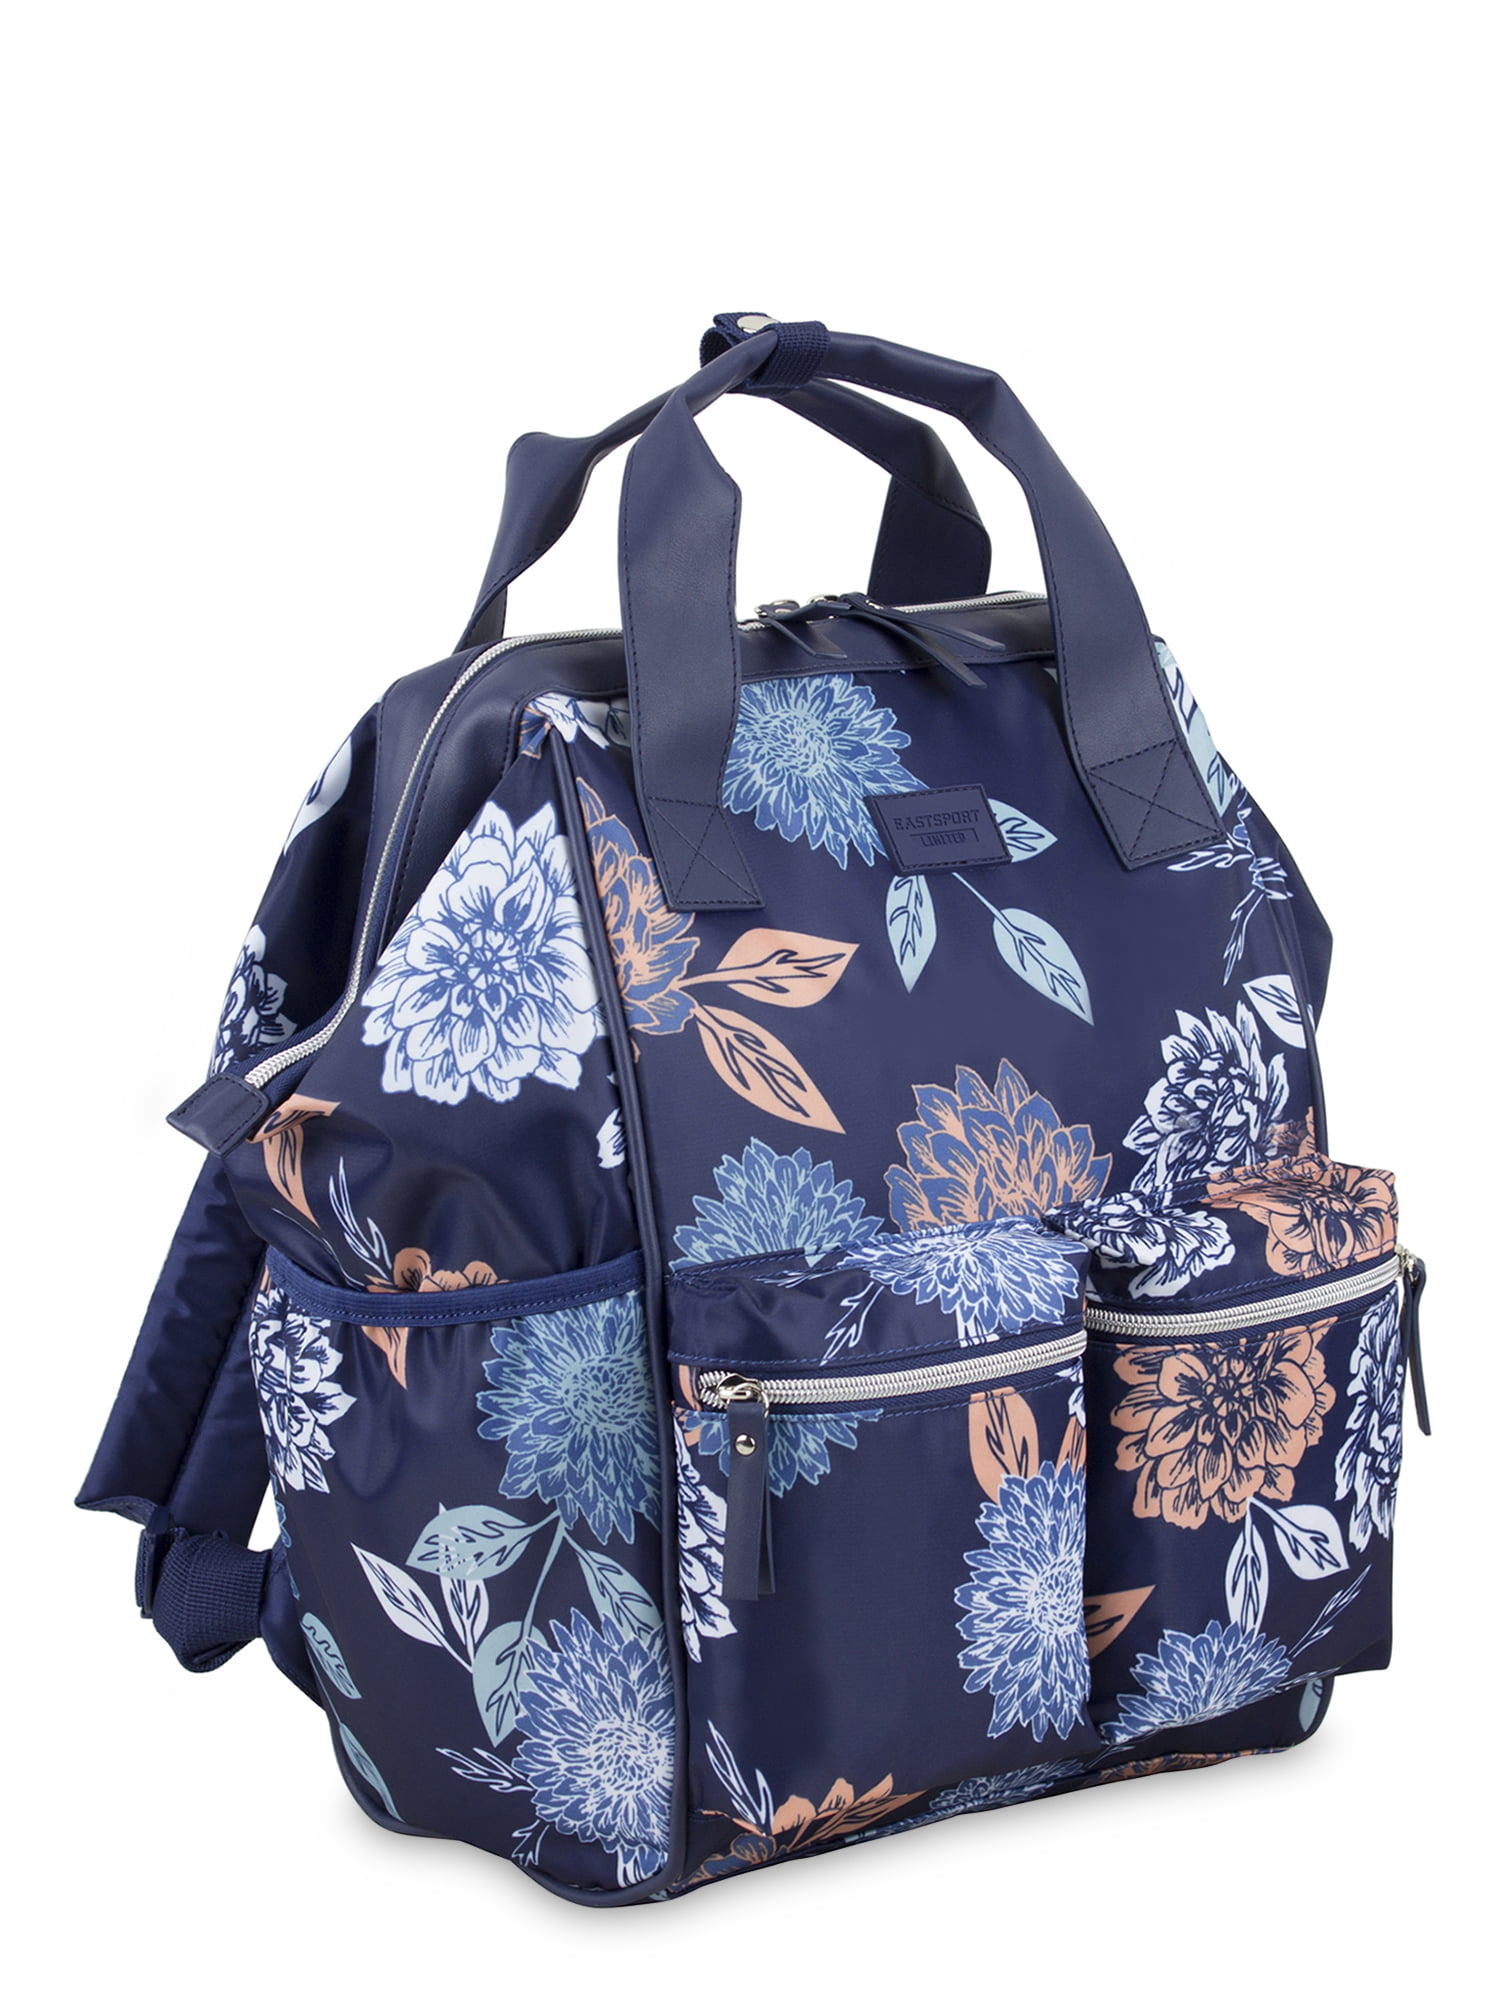 Eastsport Limited Raiya Backpack, Floral - Walmart.com